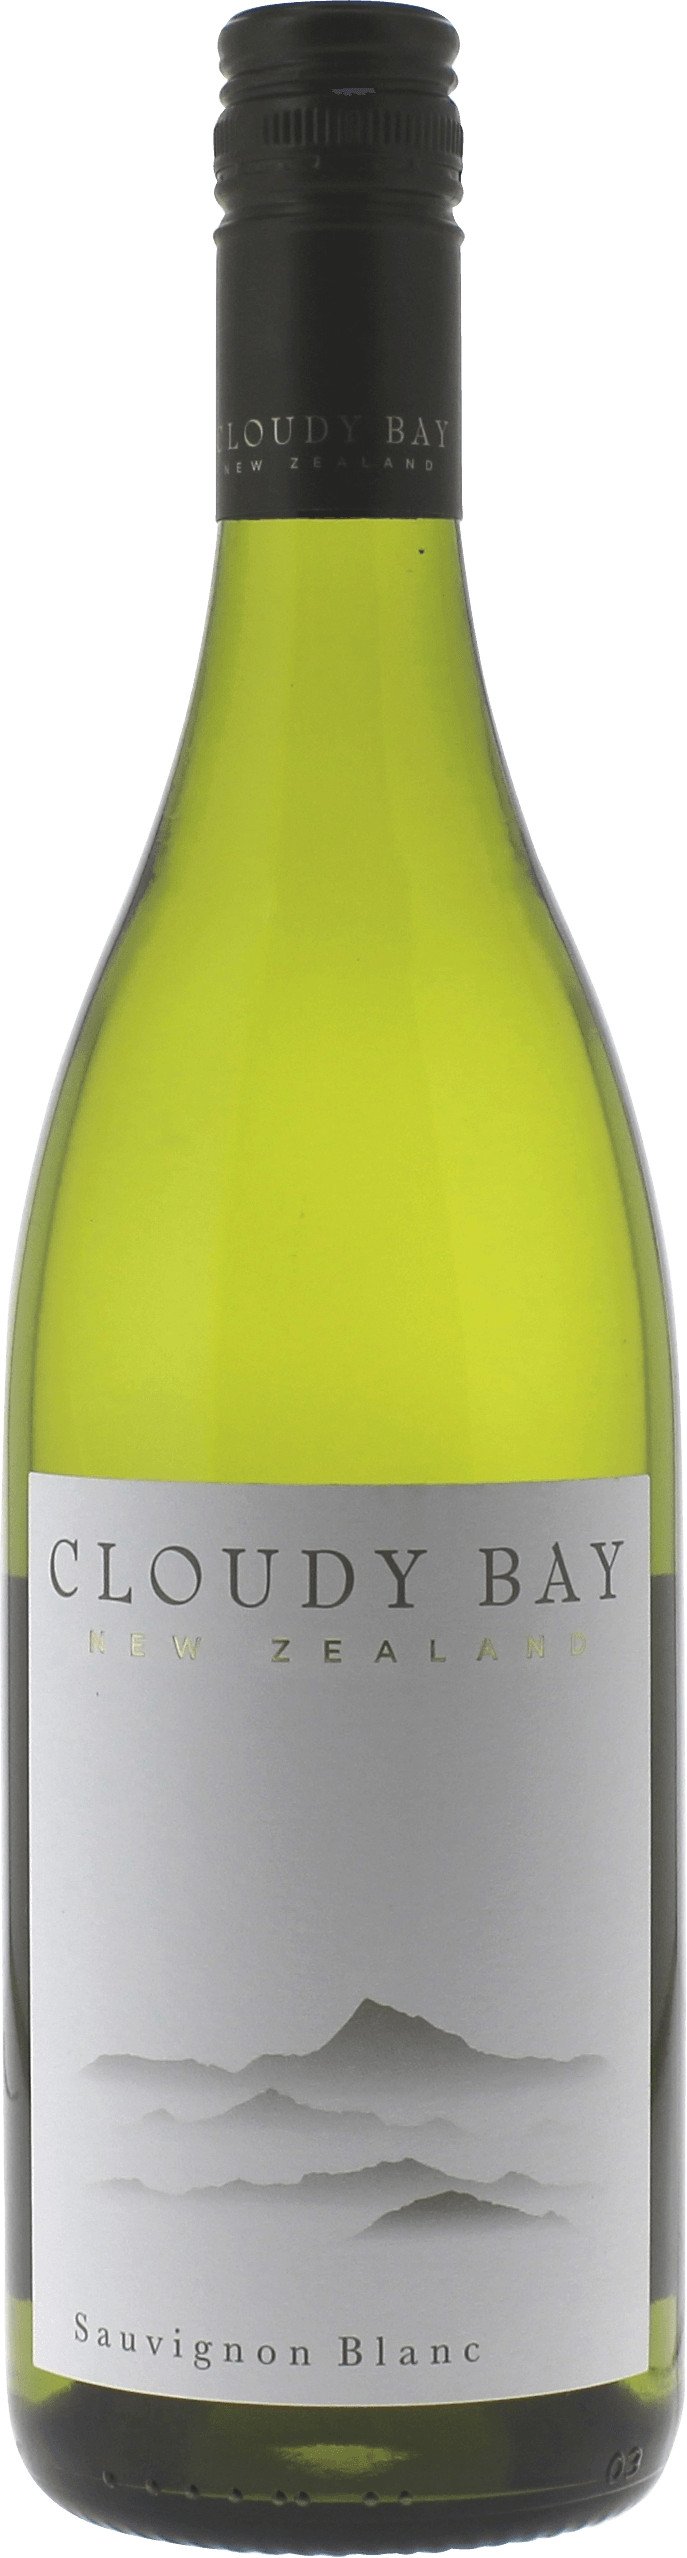 Cloudy bay sauvignon blanc marlborough 2019  , Nouvelle Zelande